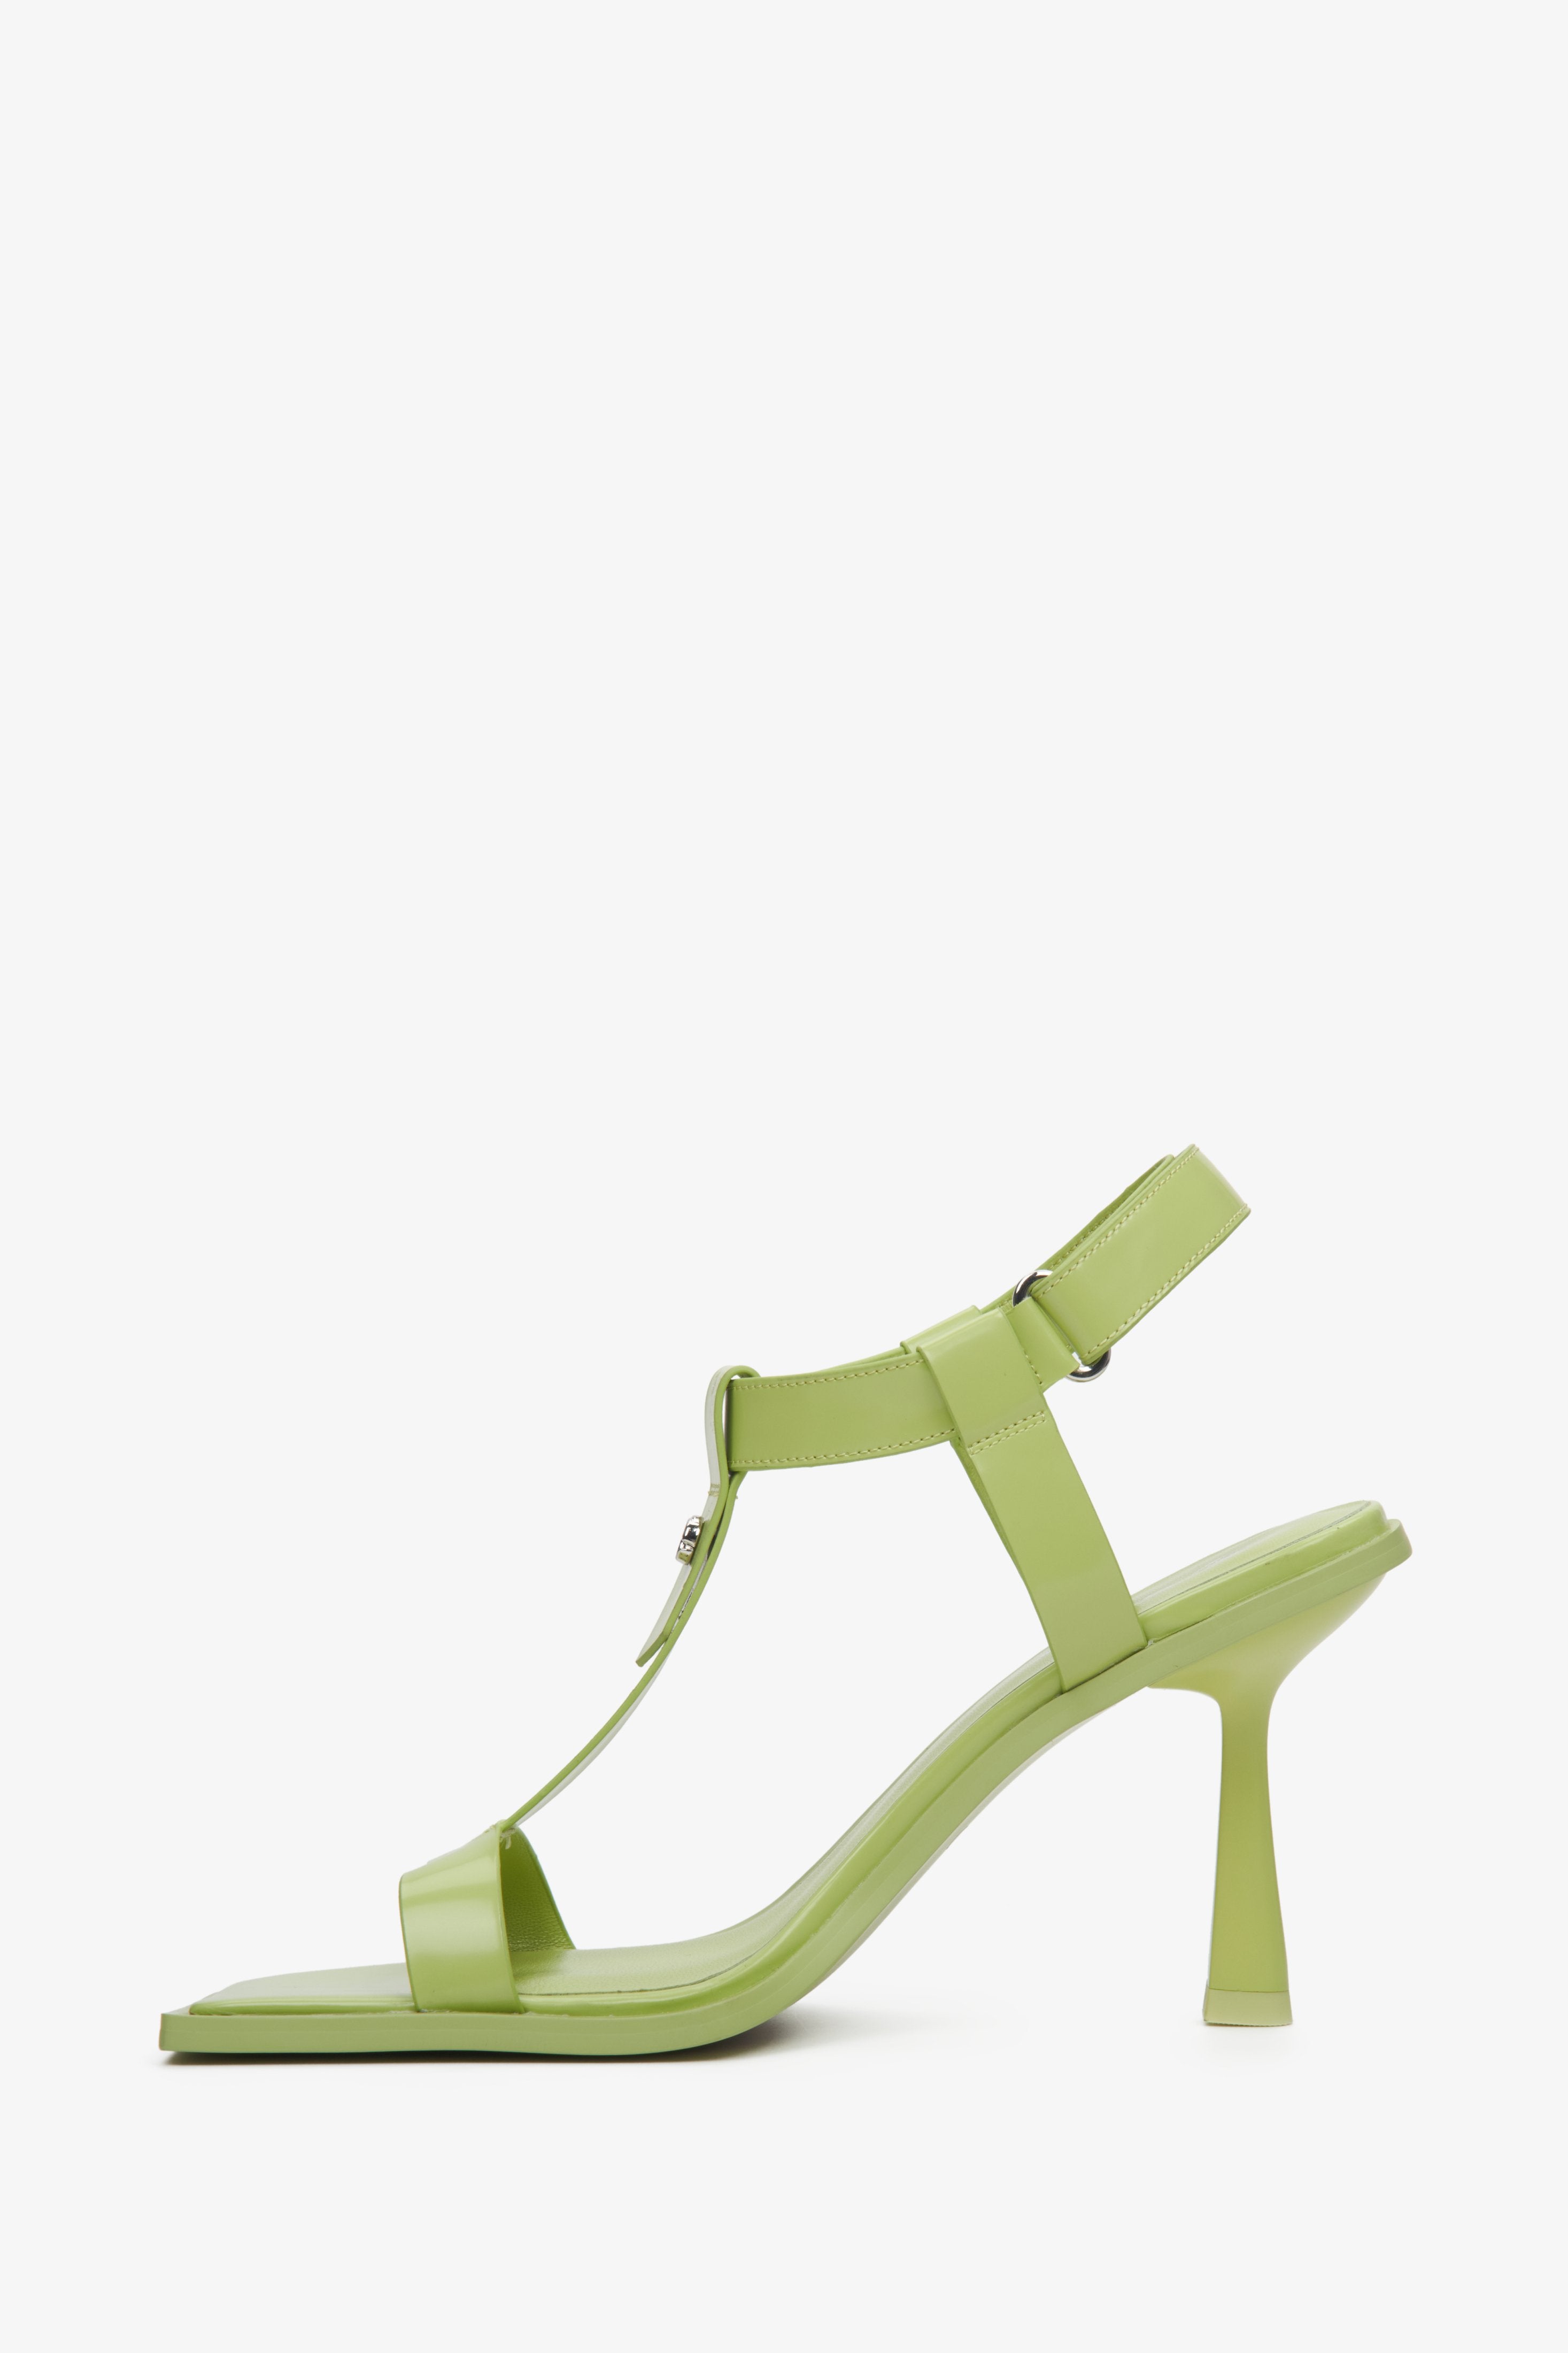 Skórzane, wysokie sandały damskie Estro w kolorze jasnozielonym - profil buta.